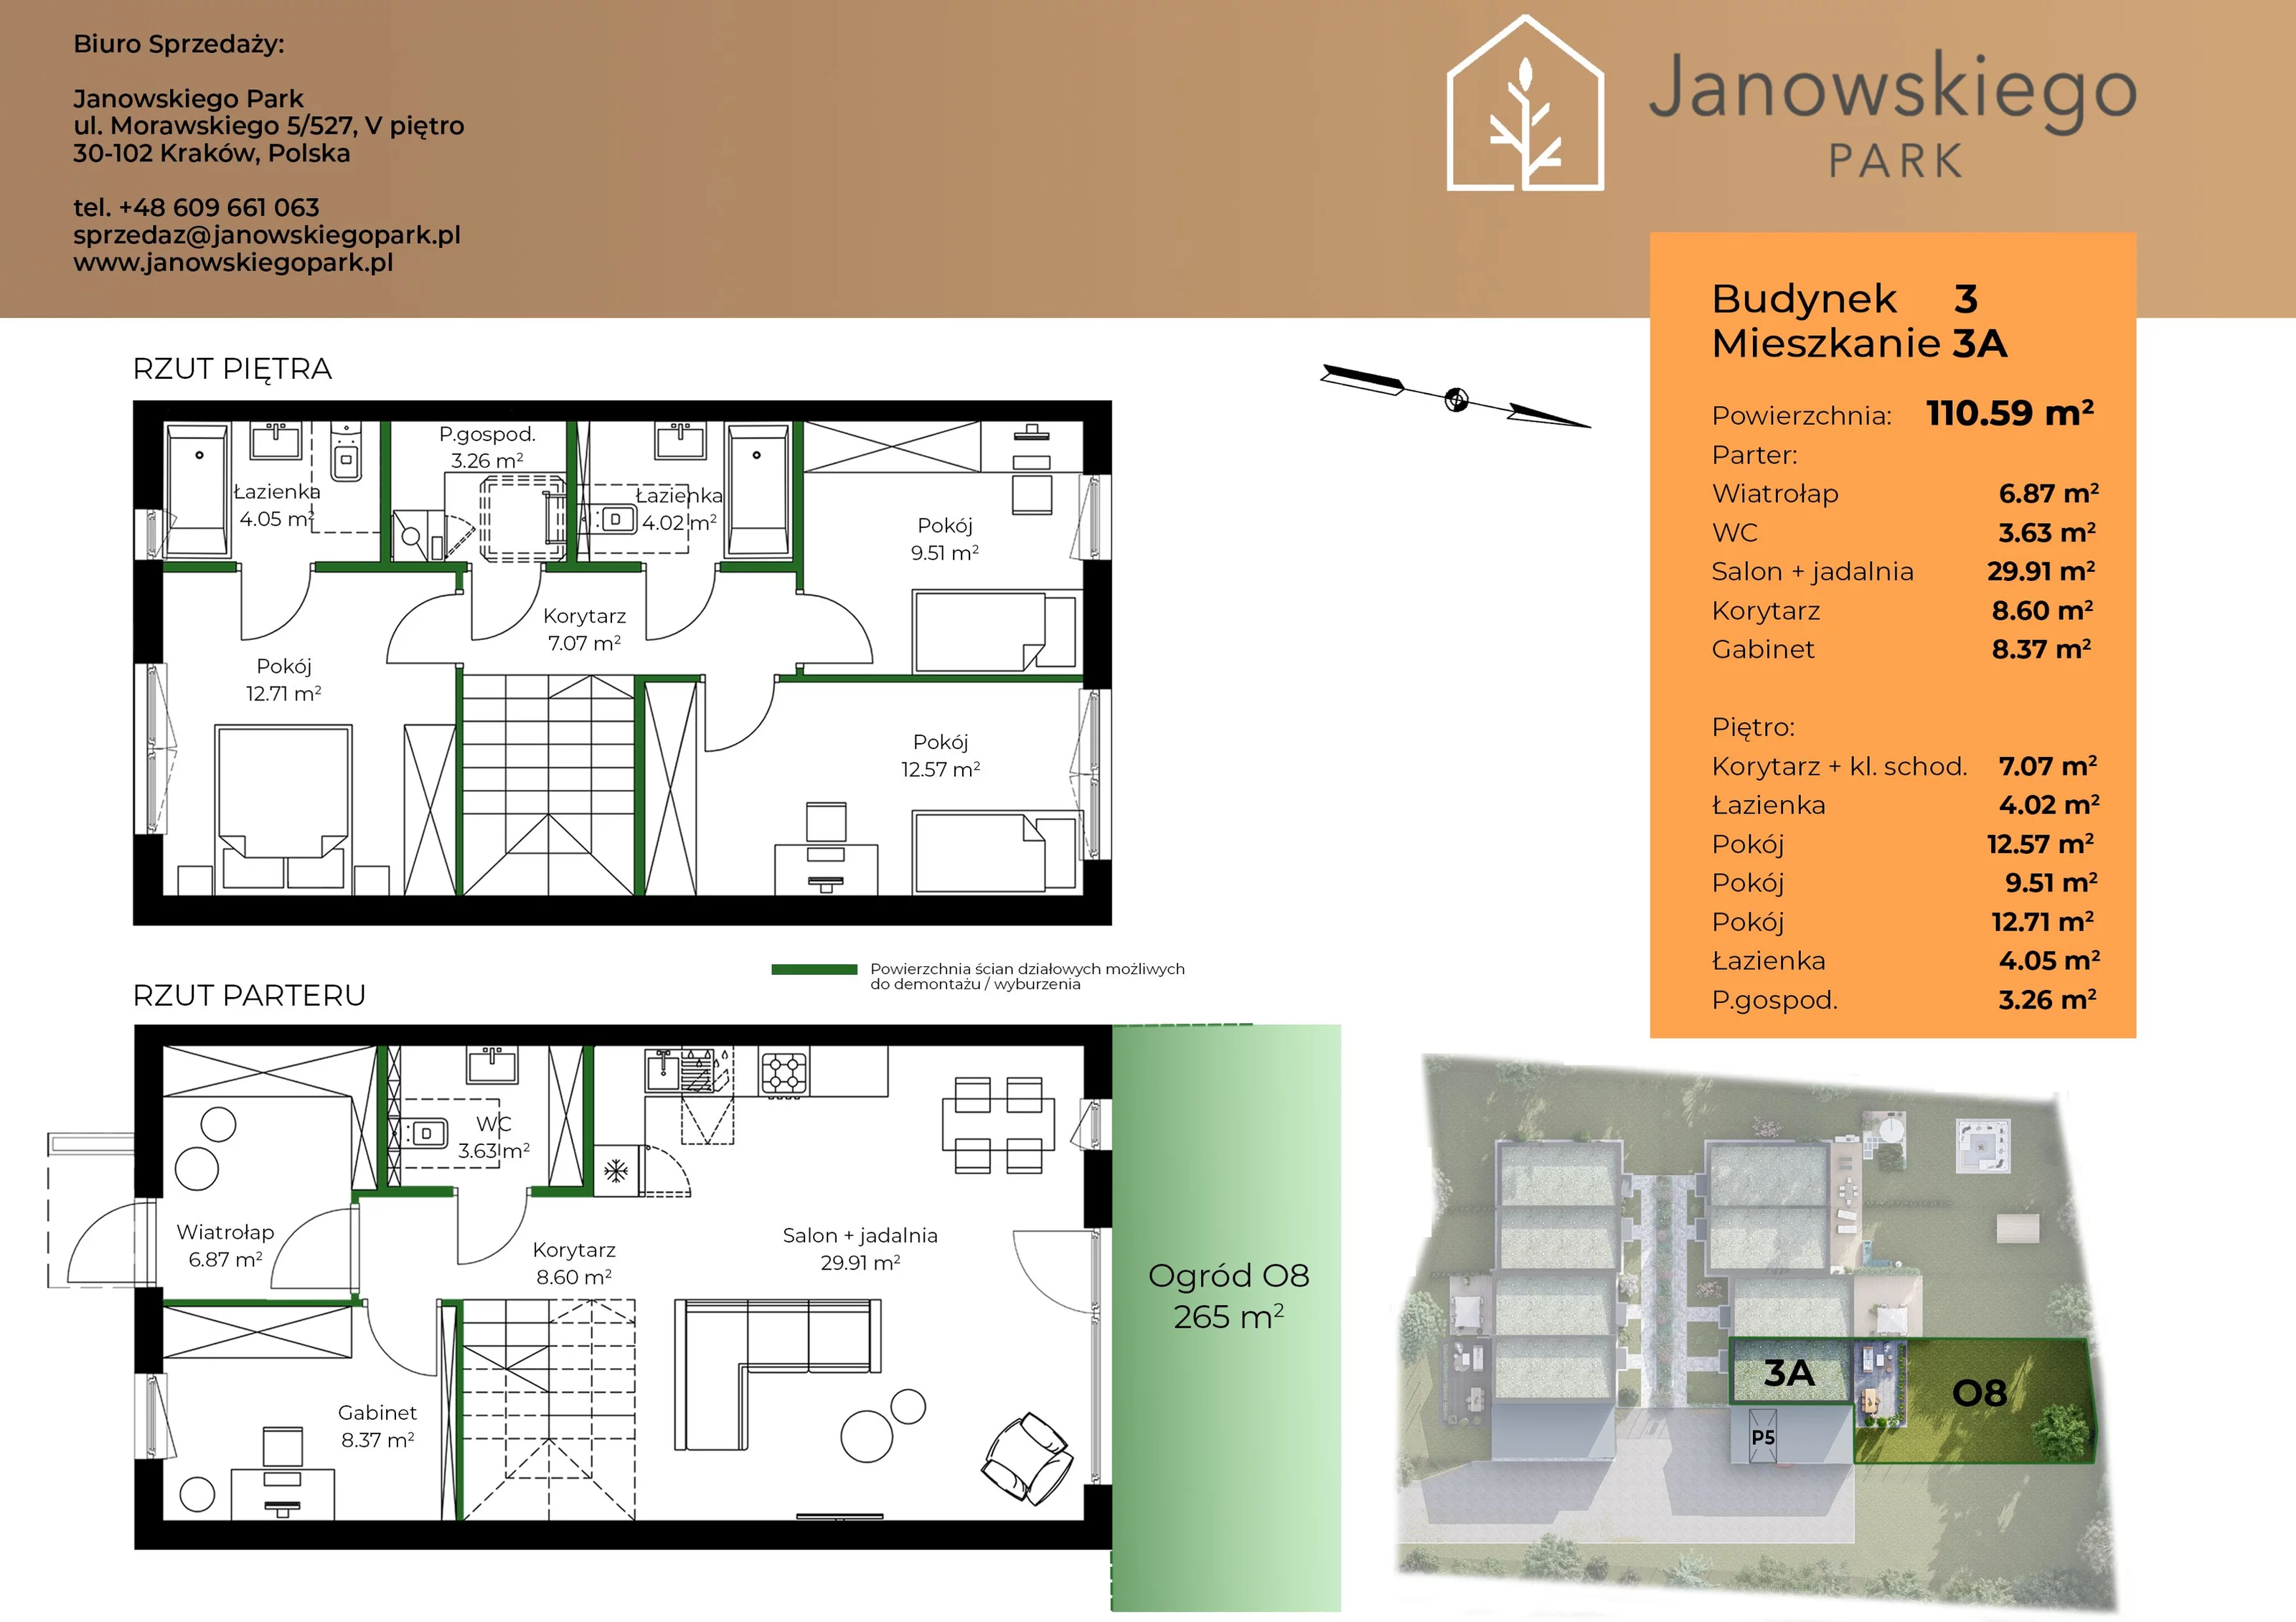 Mieszkanie 110,59 m², parter, oferta nr B3-3A, Janowskiego Park, Kraków, Swoszowice, Kliny Borkowskie, ul. Jana Janowskiego